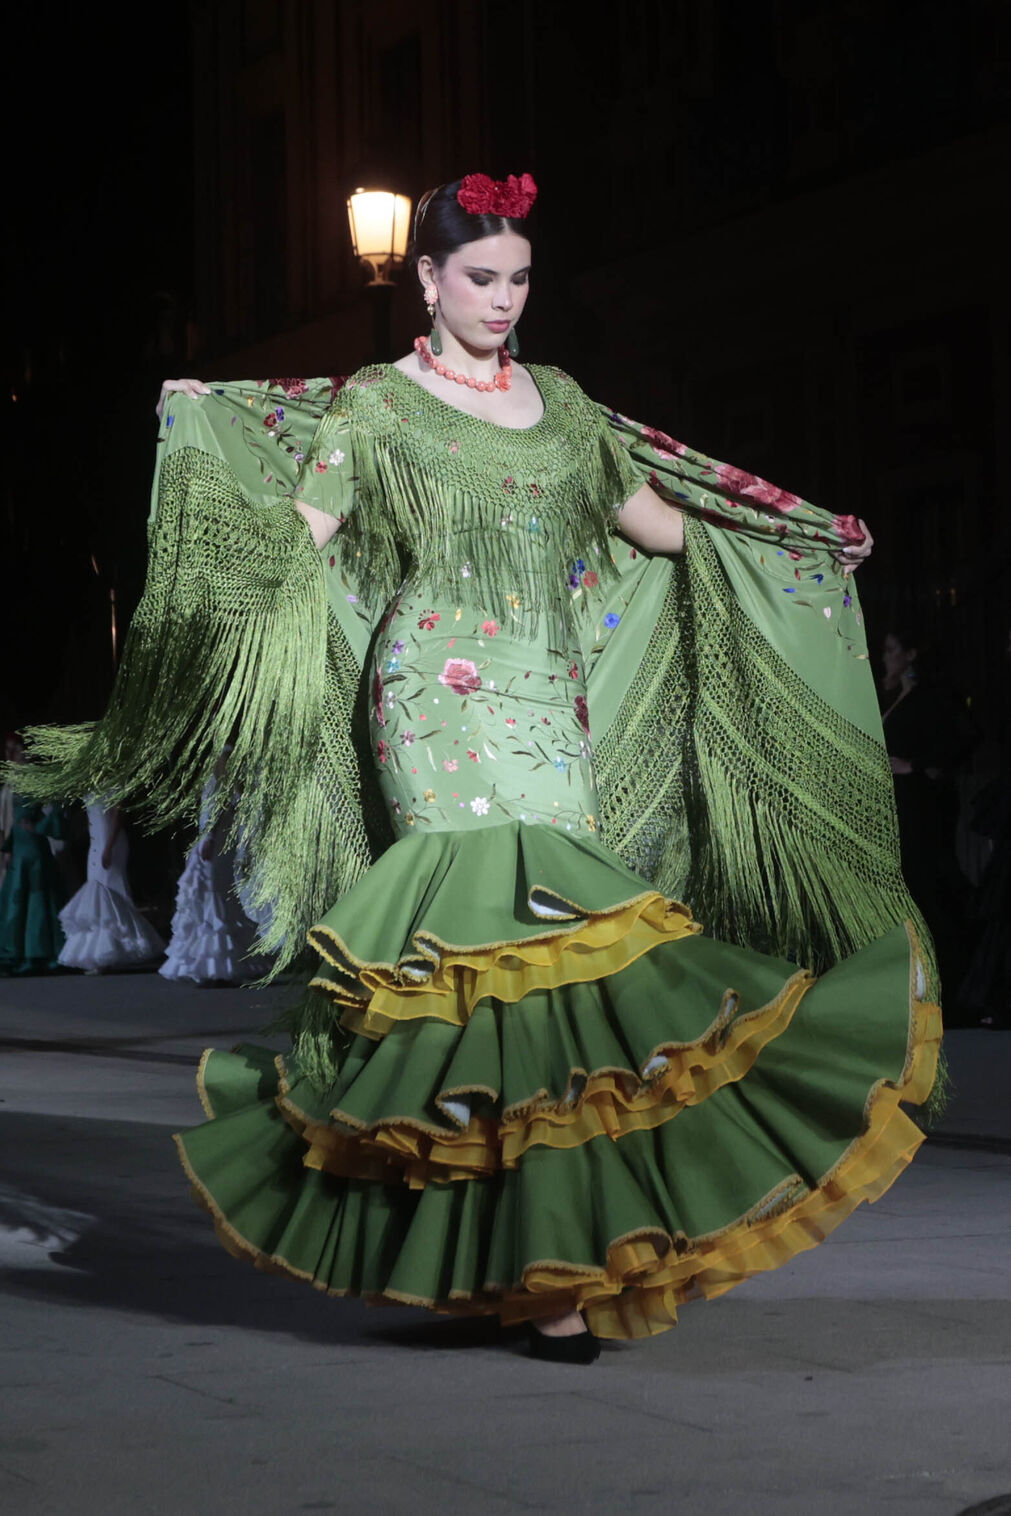 El desfile Andaluc&iacute;a es flamenca en el Palacio de San Telmo, todas las fotos